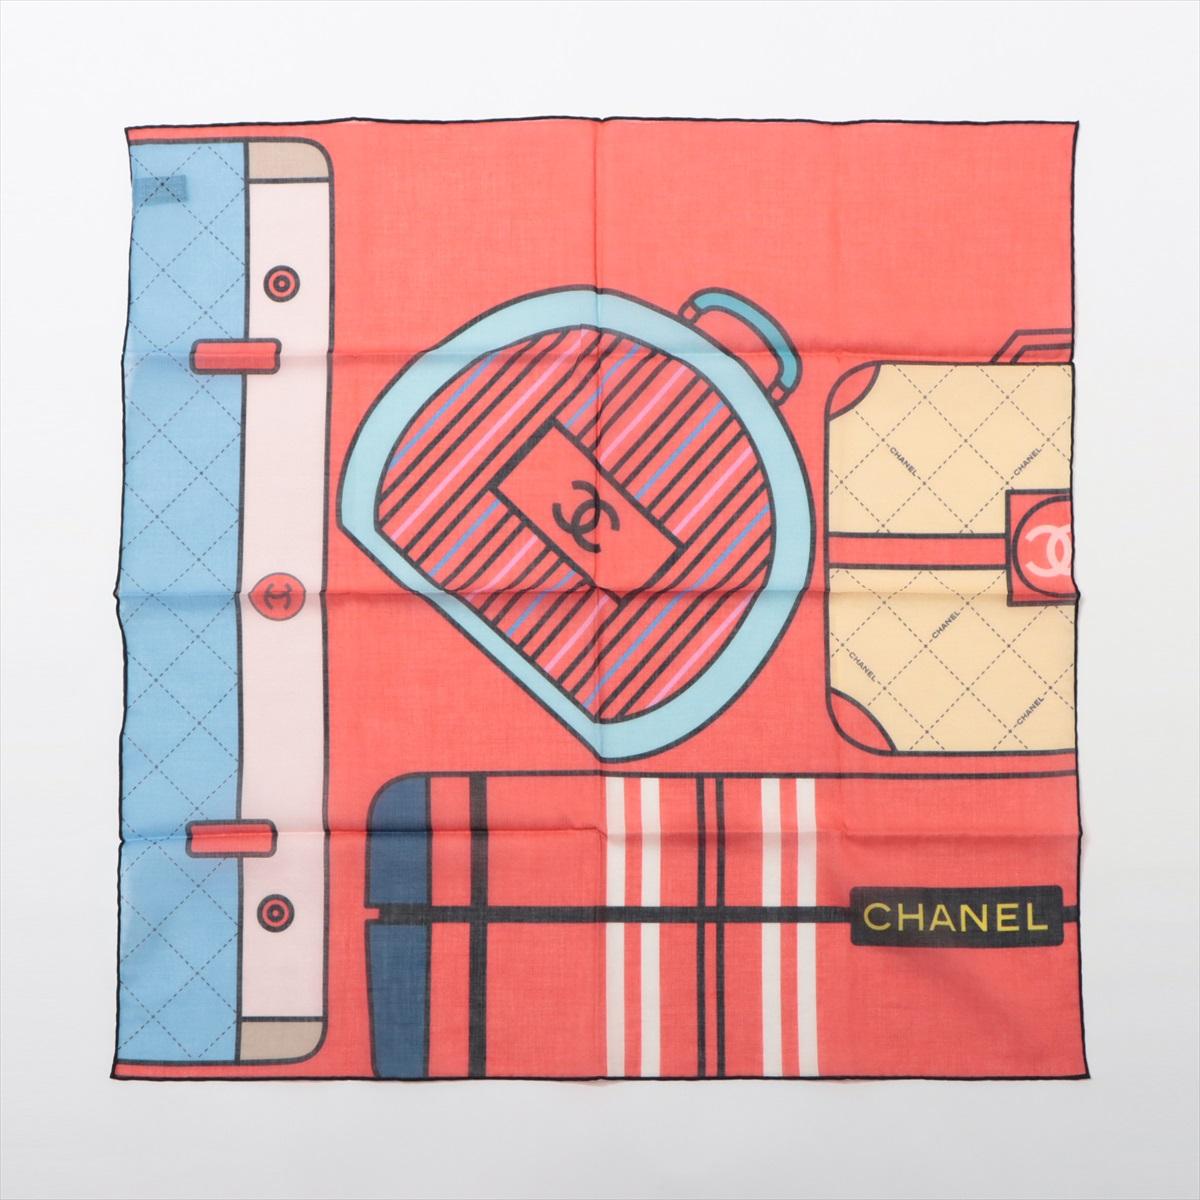 Der mehrfarbige Schal aus bedruckter Baumwolle von Chanel ist ein lebendiges und schickes Accessoire, das die Essenz des ikonischen Stils von Chanel verkörpert. Der Schal ist aus weicher und leichter Baumwolle gefertigt und mit einem auffälligen